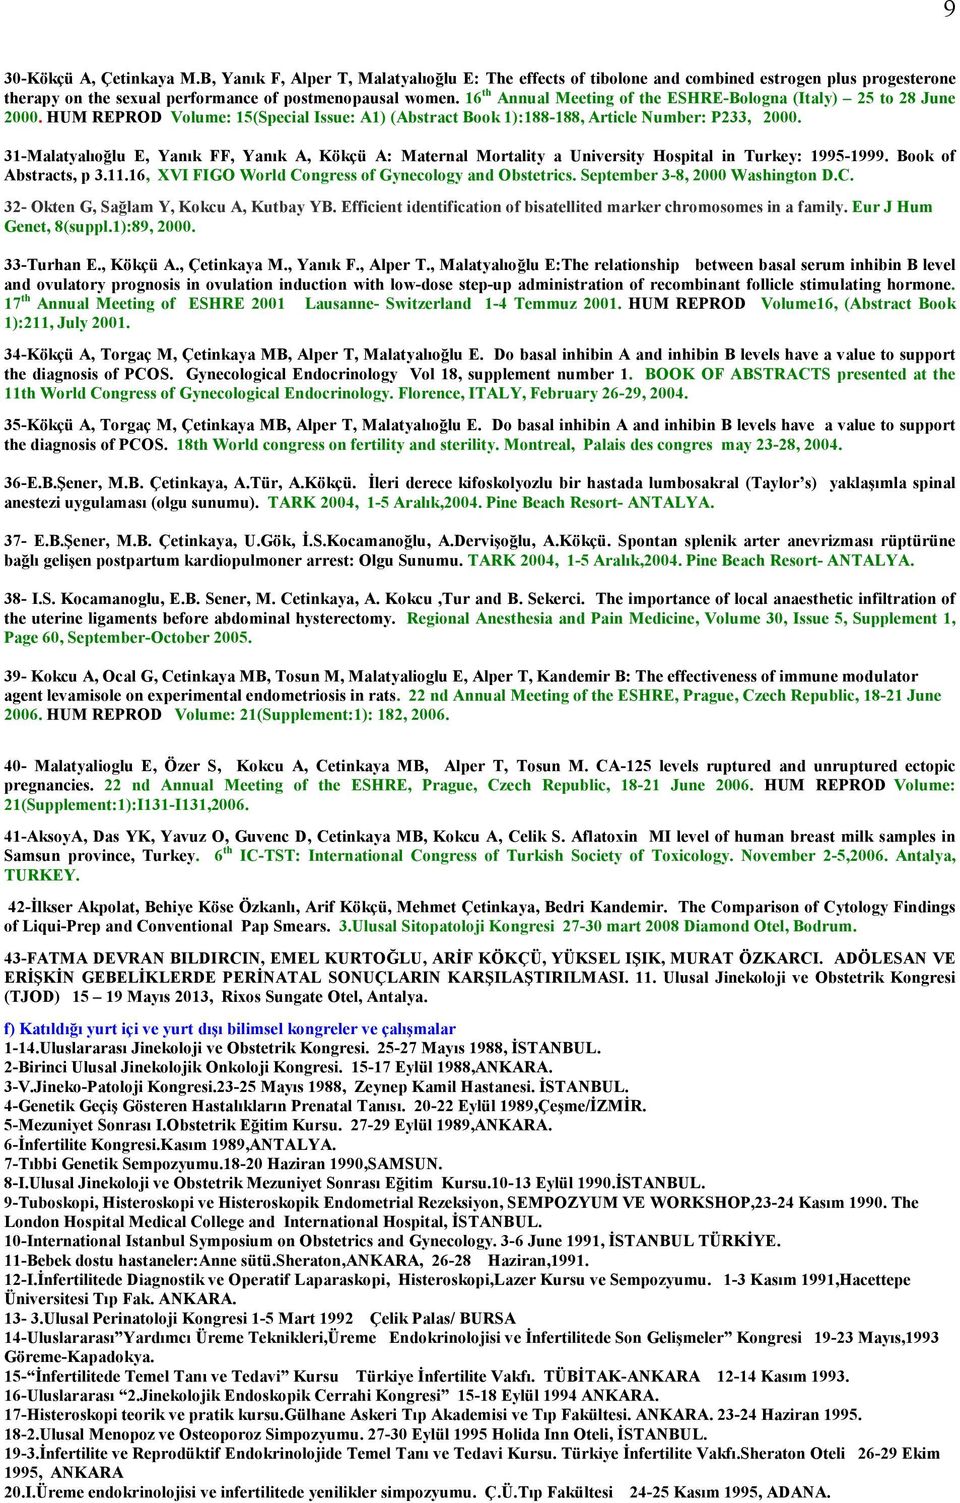 31-Malatyalıoğlu E, Yanık FF, Yanık A, Kökçü A: Maternal Mortality a University Hospital in Turkey: 1995-1999. Book of Abstracts, p 3.11.16, XVI FIGO World Congress of Gynecology and Obstetrics.